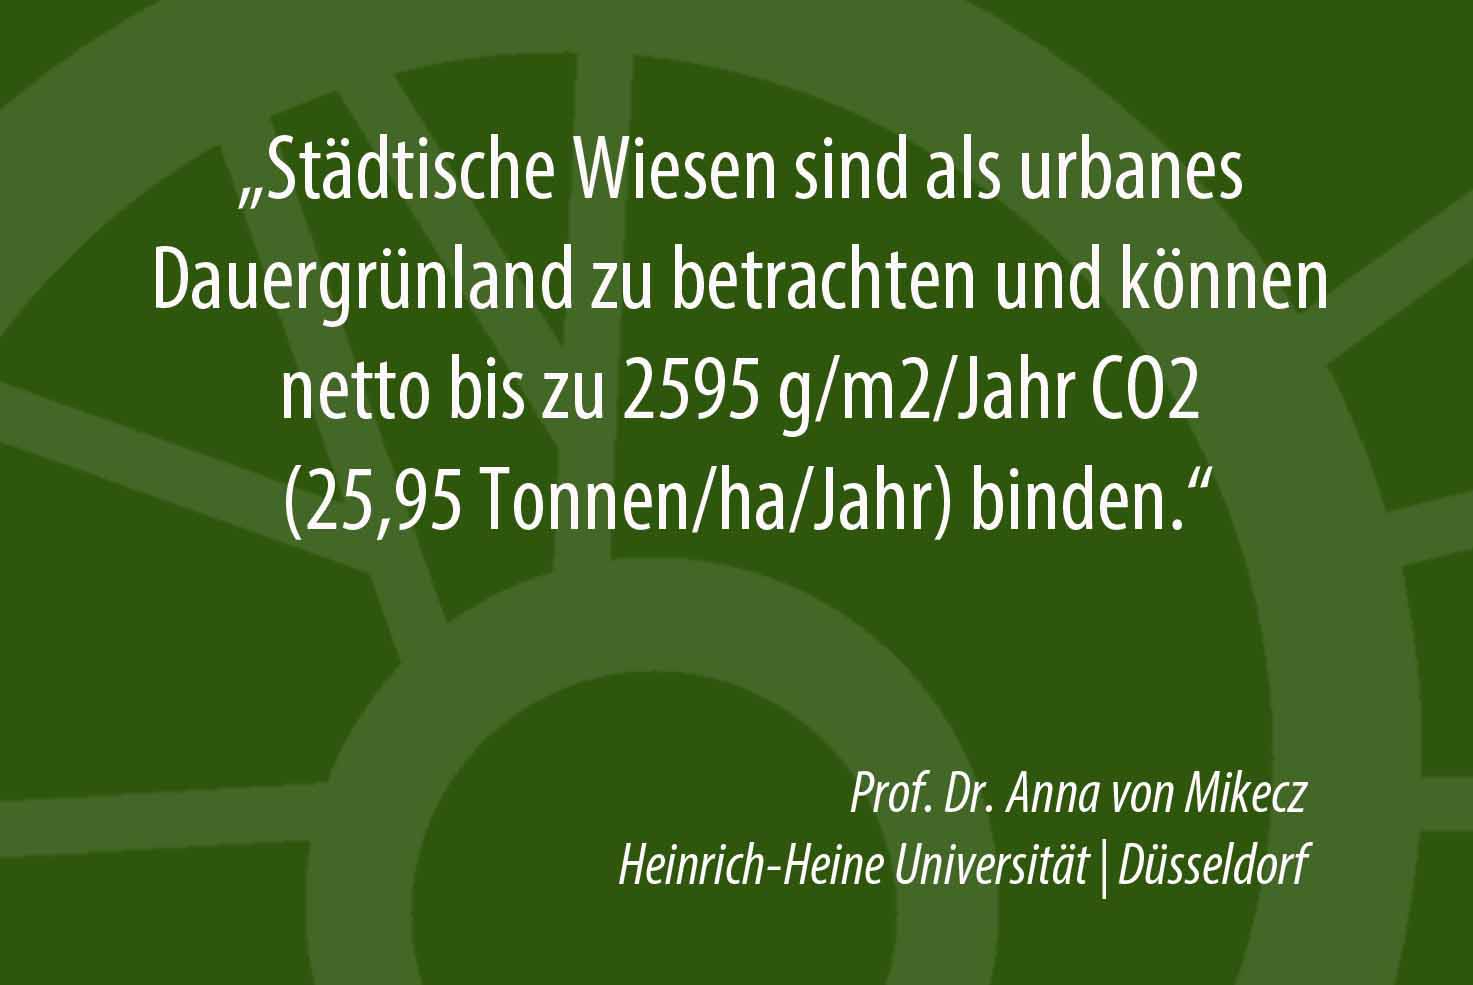 Urbanes Dauergrünland bindet CO2